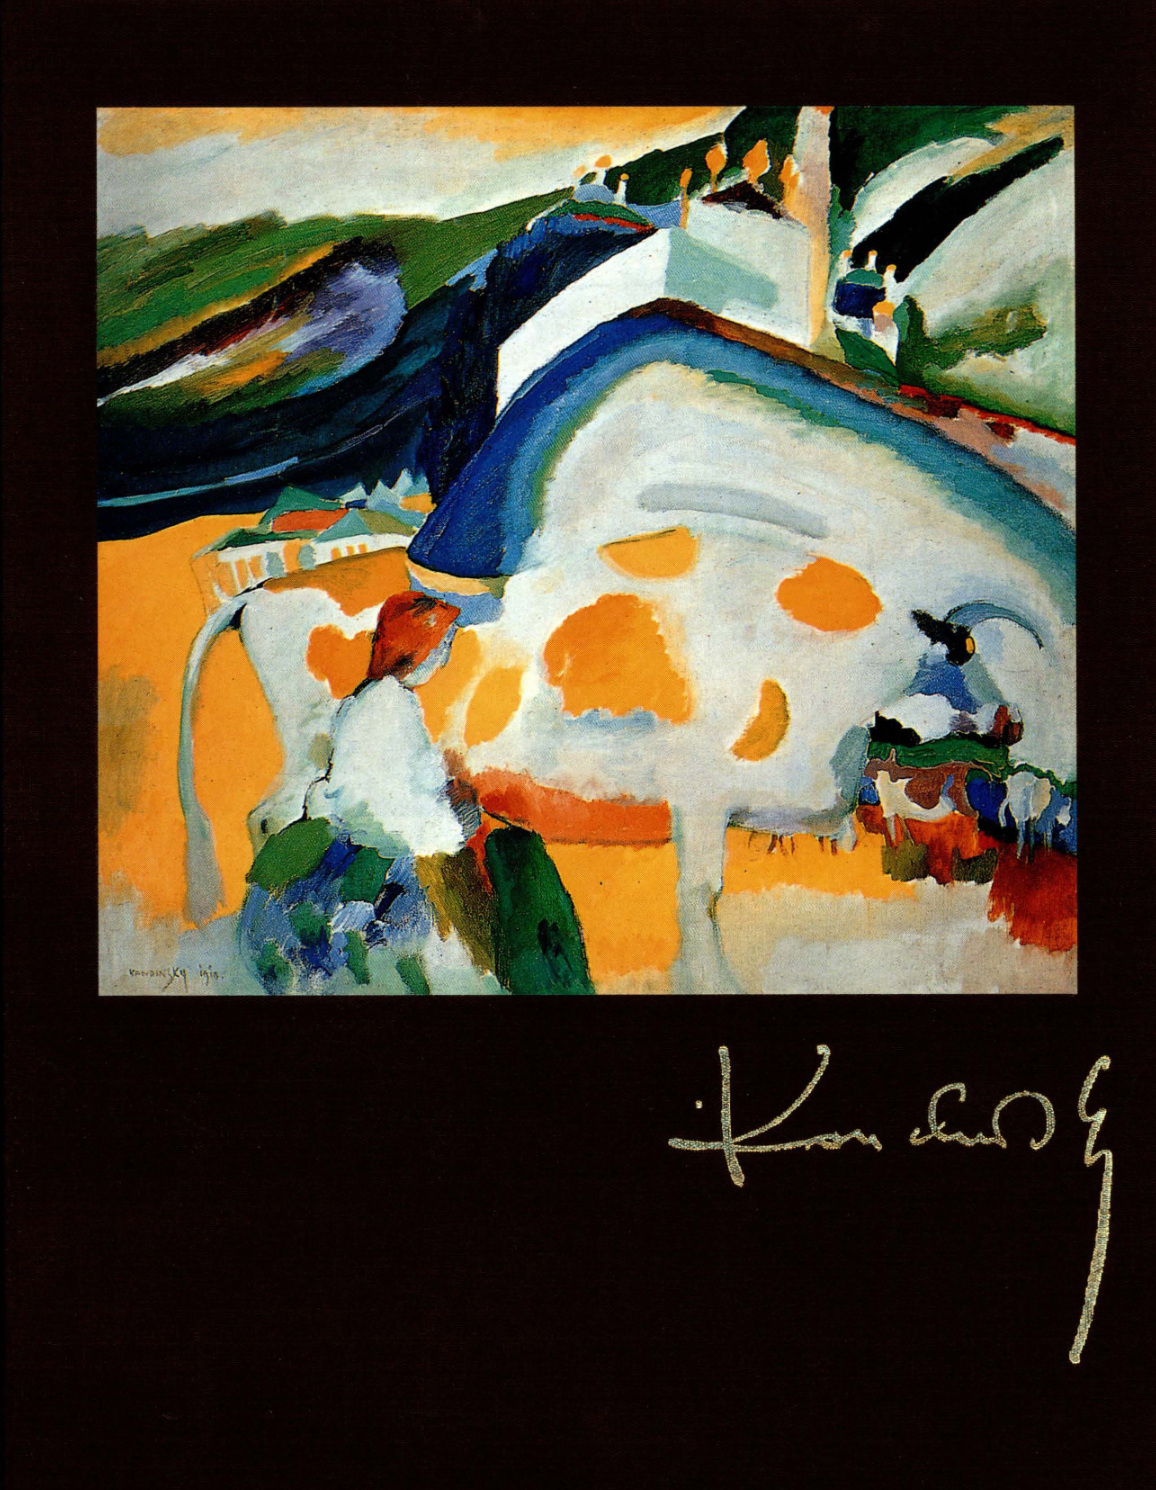 Naslovnica knjige: Marijan Tršar, Vasilij Kandinski, slikar in teoretik: rojstvo abstraktne umetnosti, Ljubljana, 1997